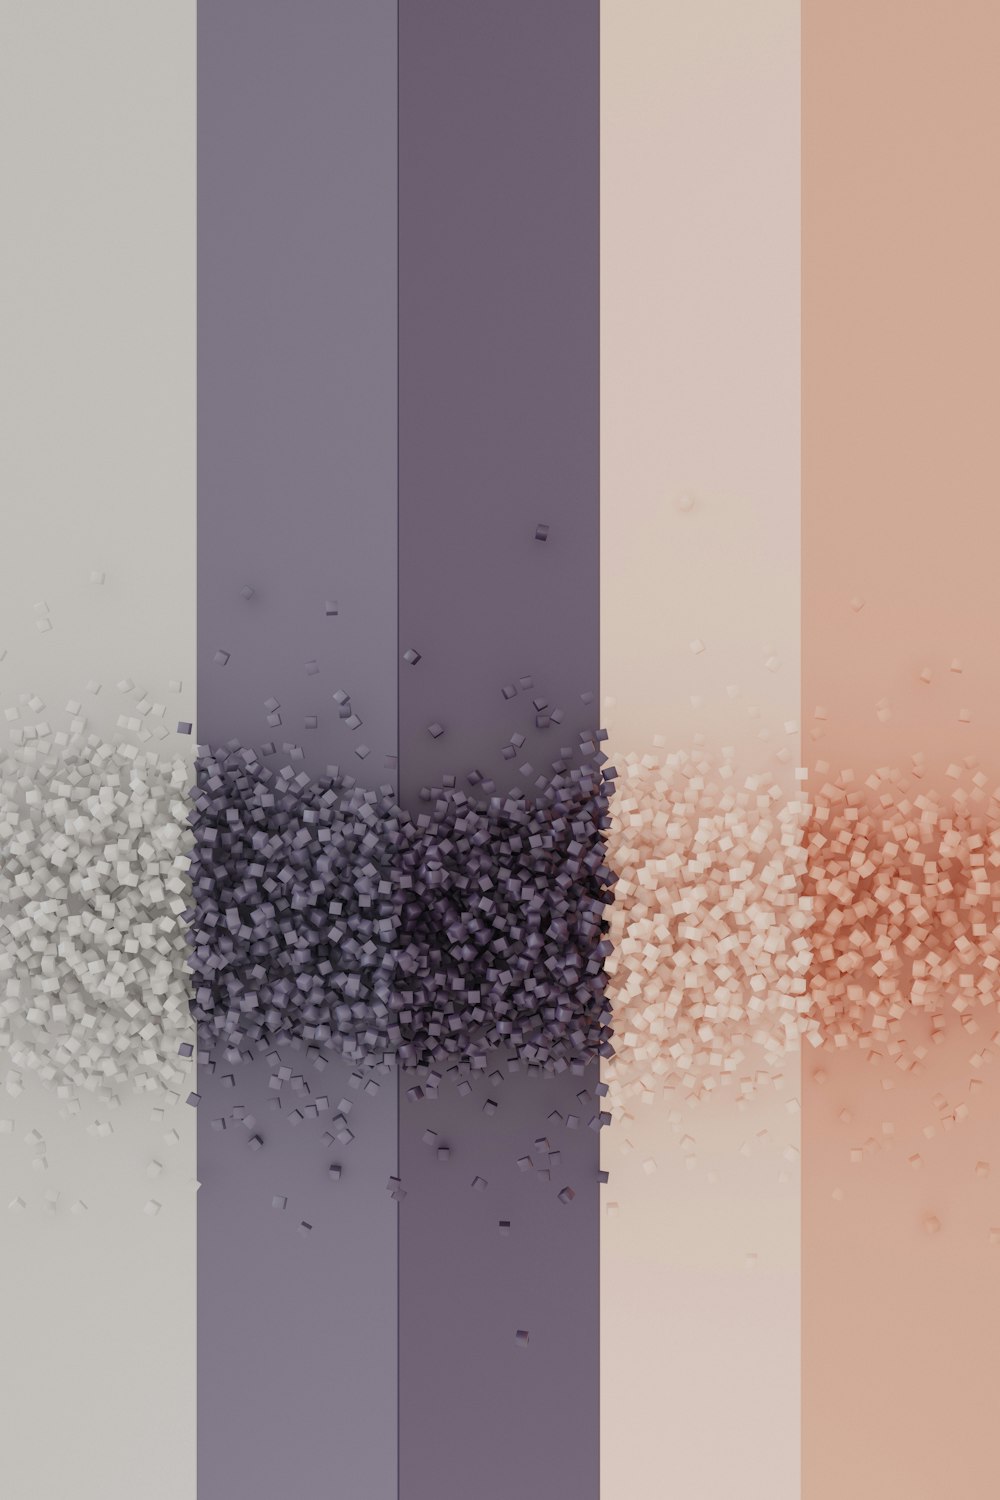 um grupo de linhas coloridas diferentes com pequenas bolhas